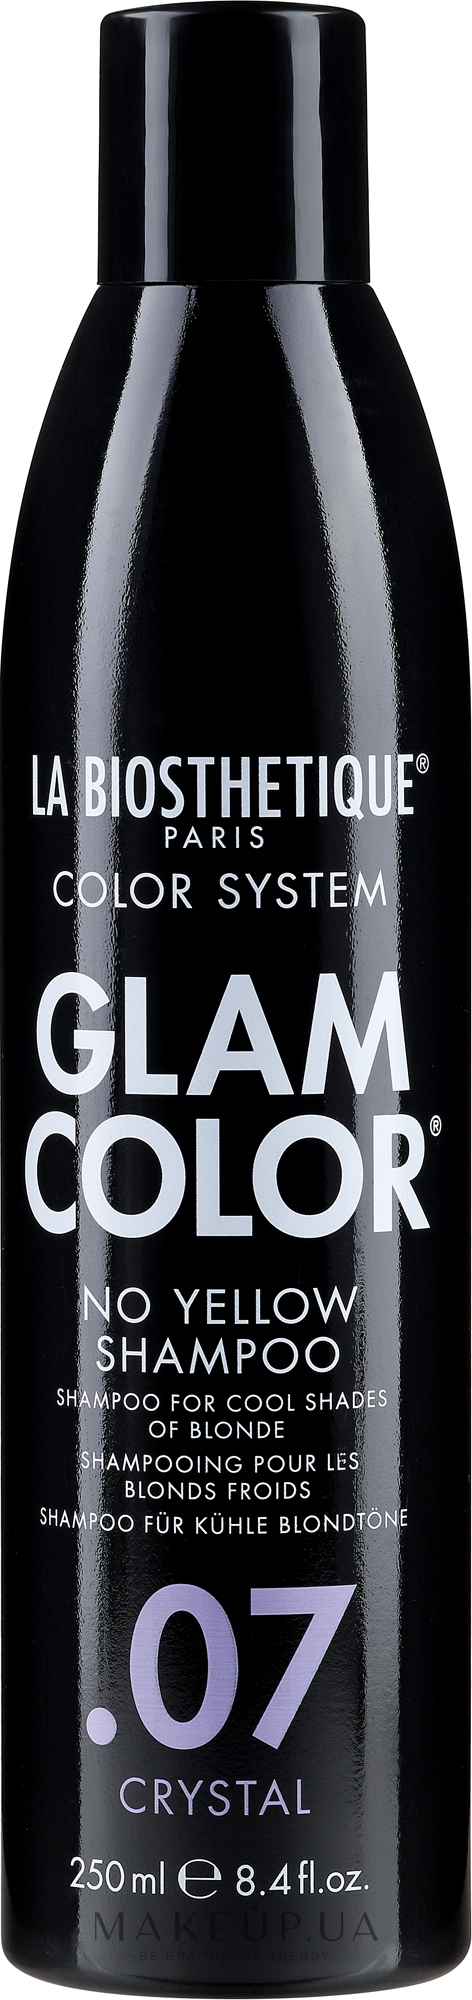 Шампунь для окрашенных волос - La Biosthetique Glam Color No Yellow Shampoo .07 Crystal — фото 250ml